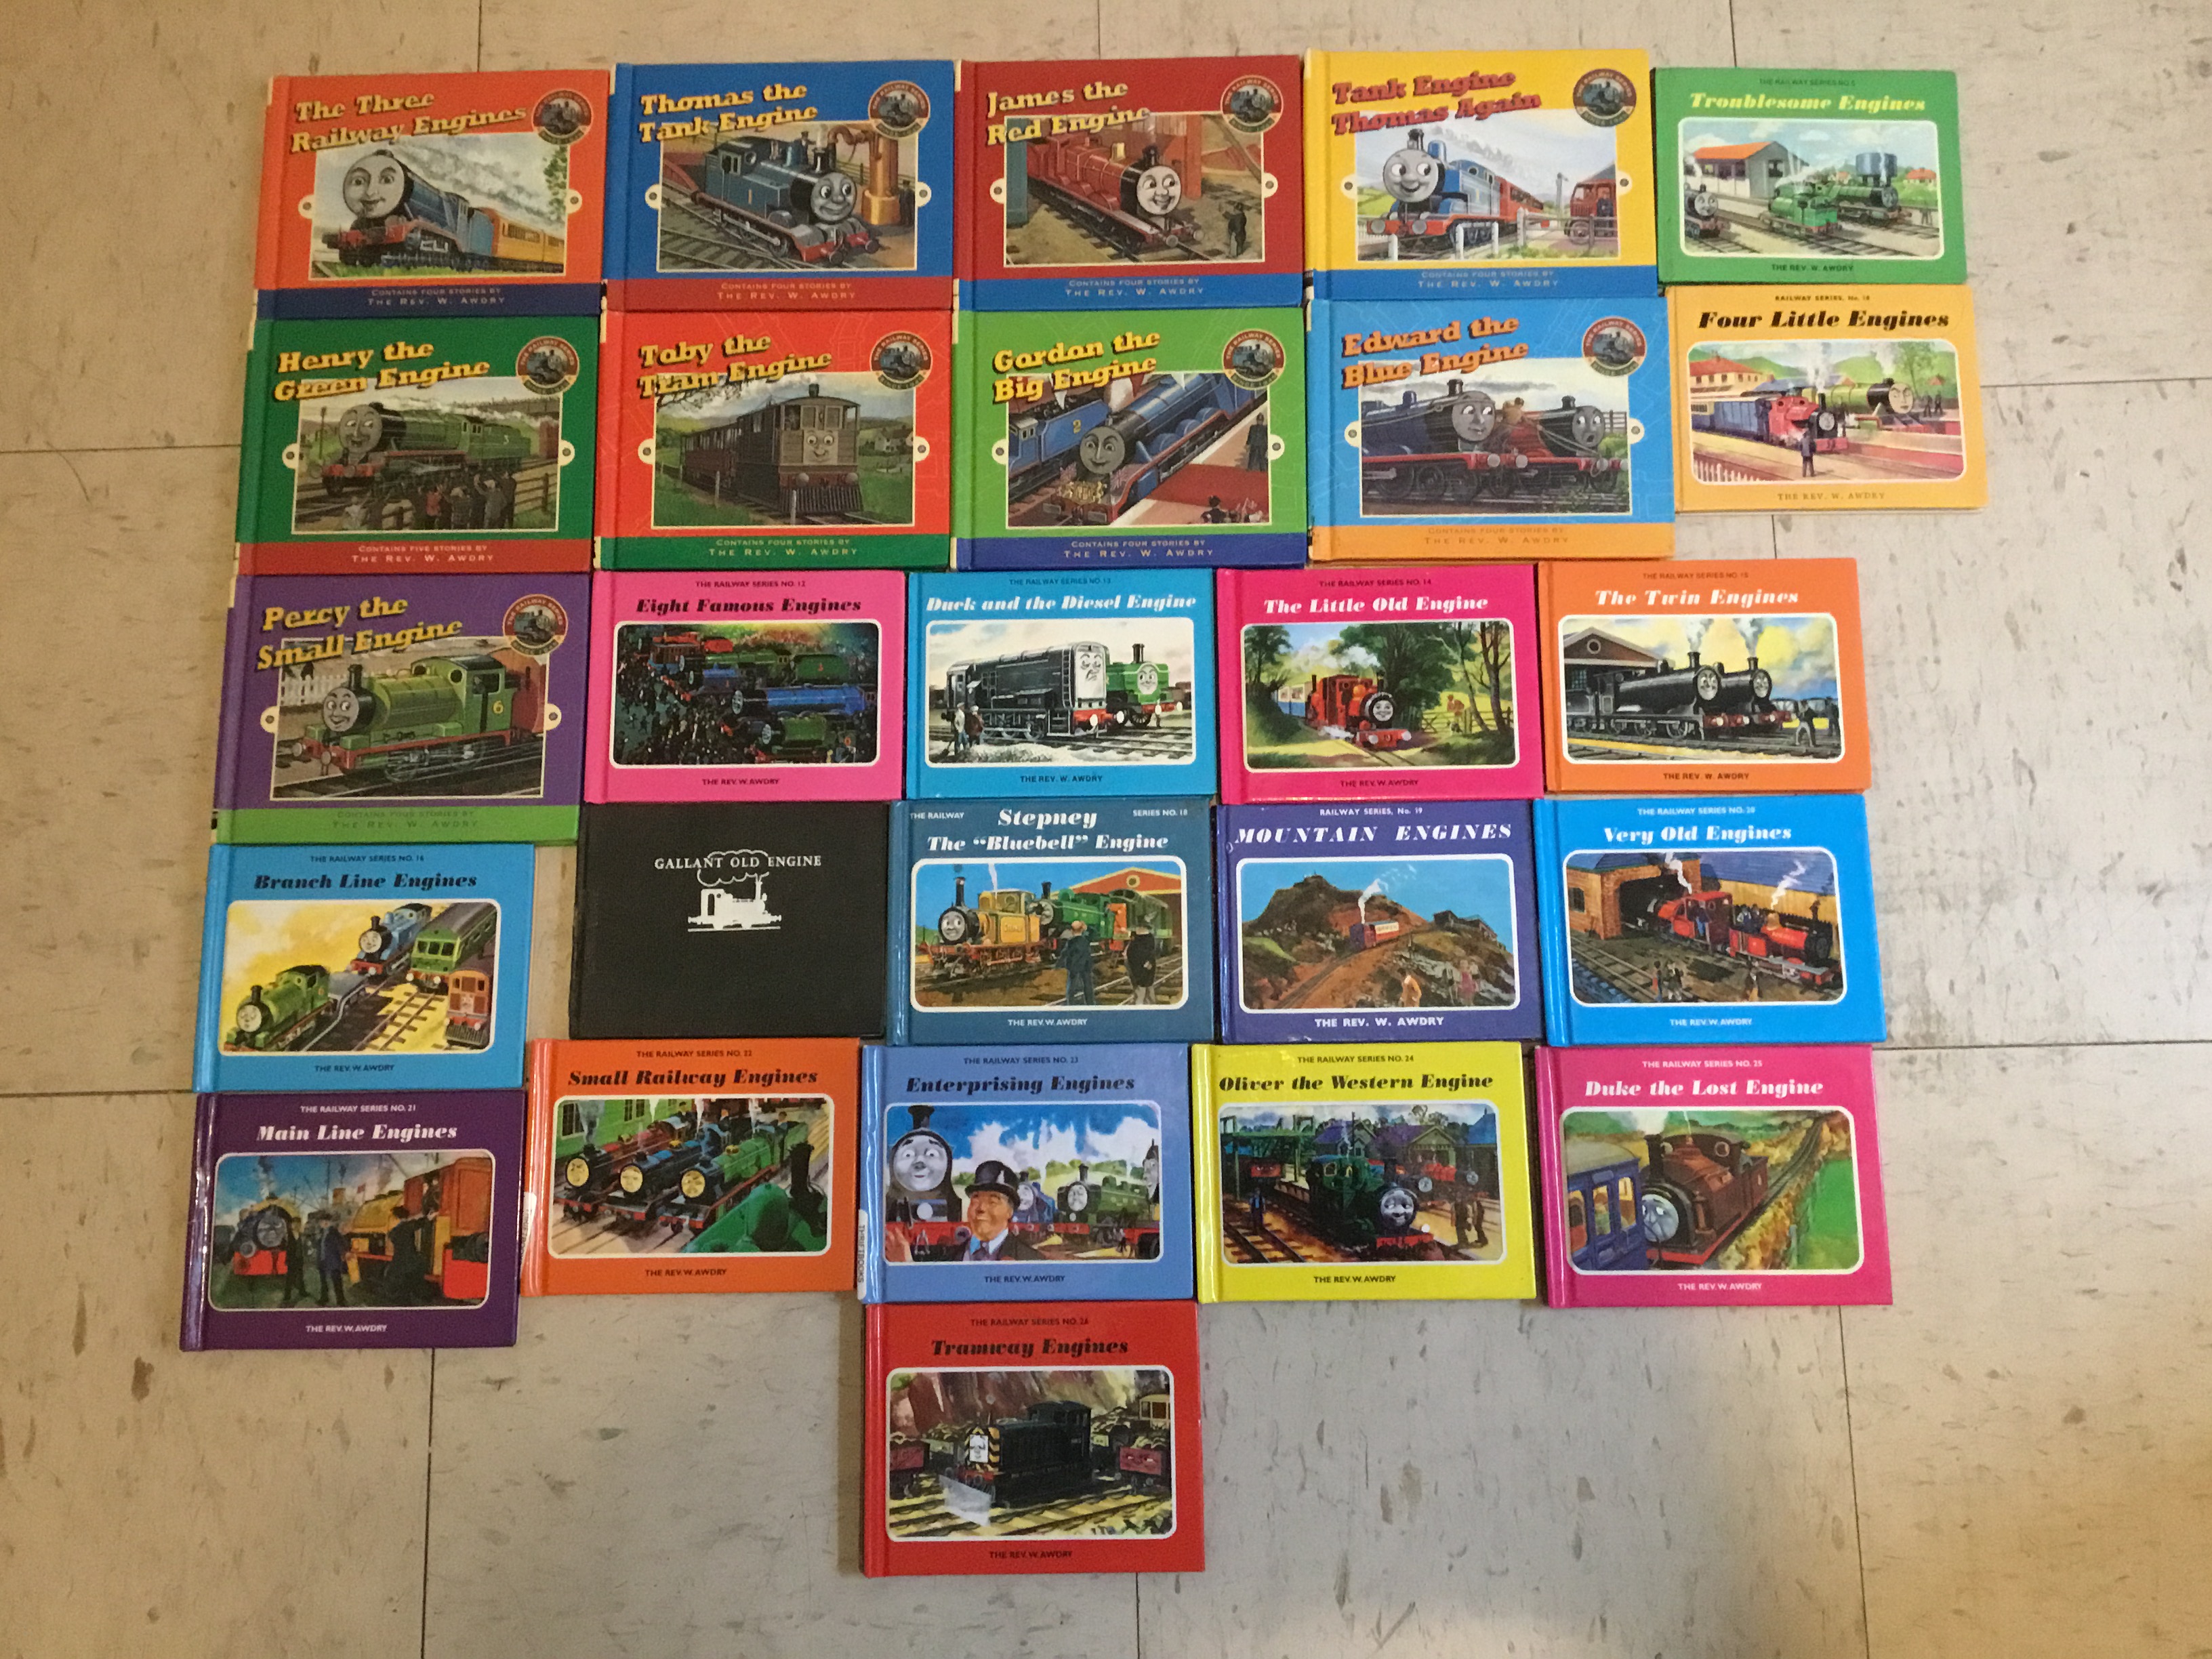 26 Railway Series Books by Hubfanlover678 on DeviantArt